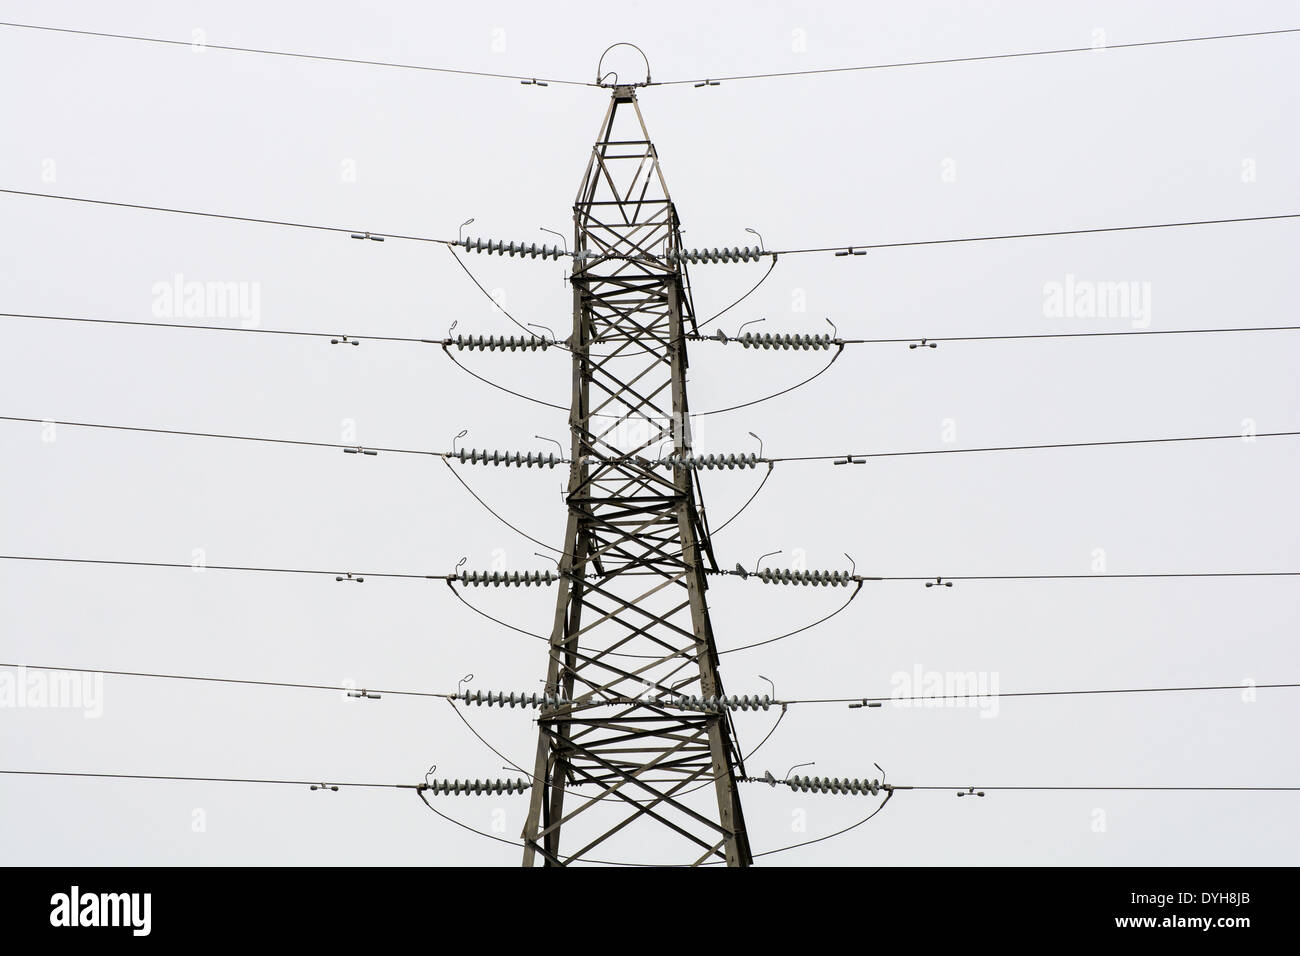 Strommast gegen einen grauen strukturlose Himmel Stockfoto